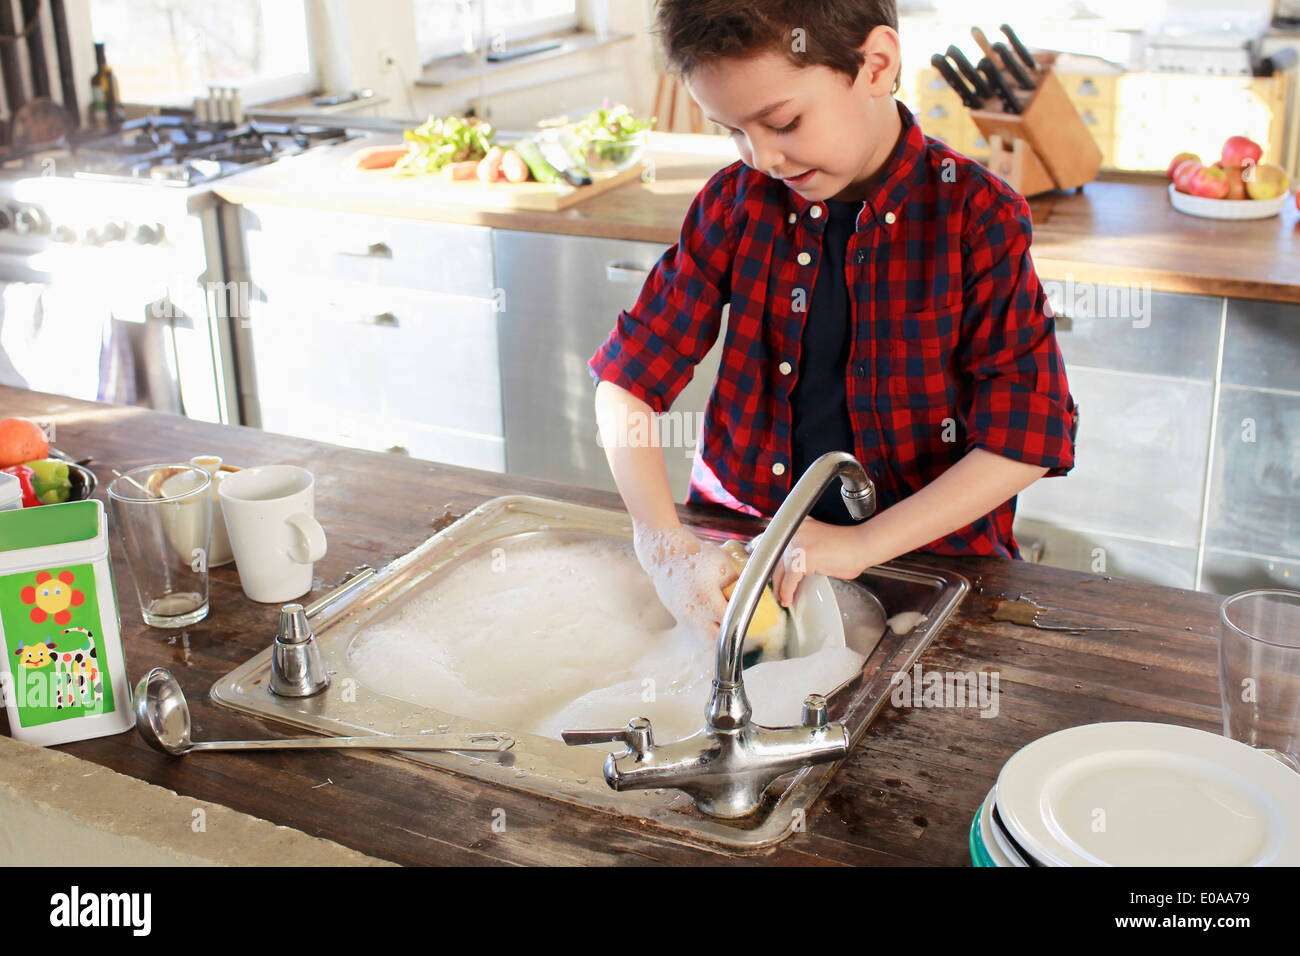 Kleiner Junge waschen in Küche Stockfoto